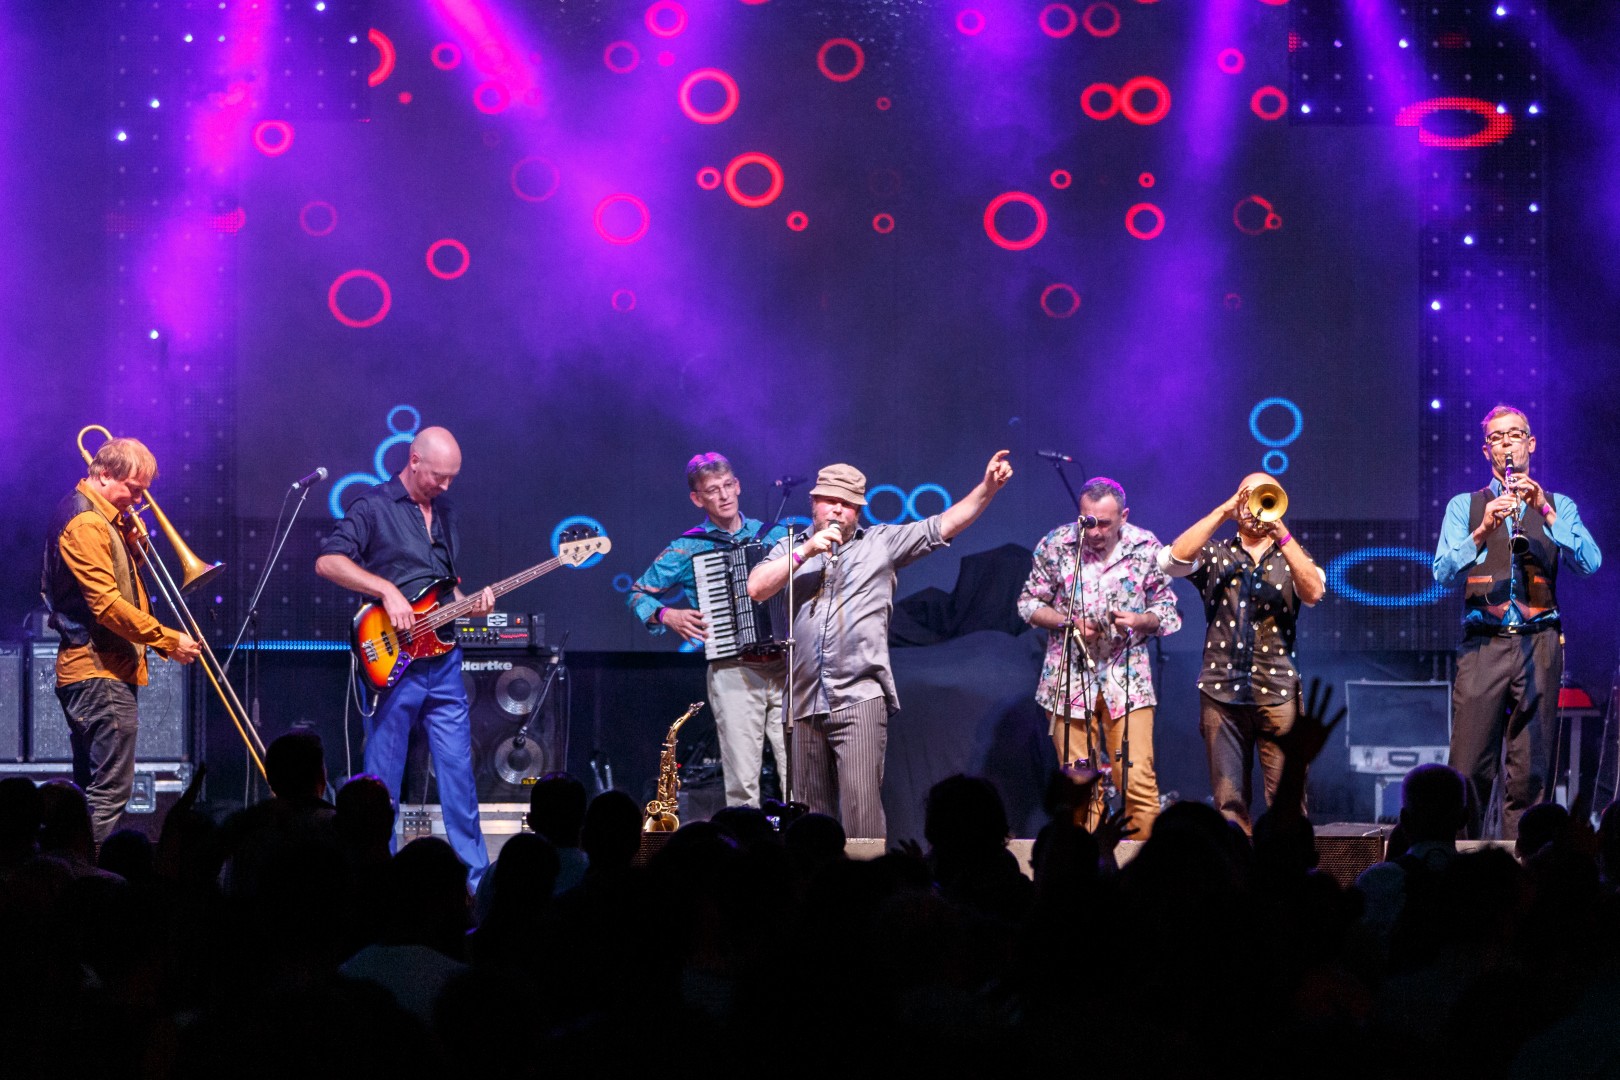 Amsterdam Klezmer Band at Grădina Uranus in Bucharest on September 13, 2015 (749cb5d9b4)